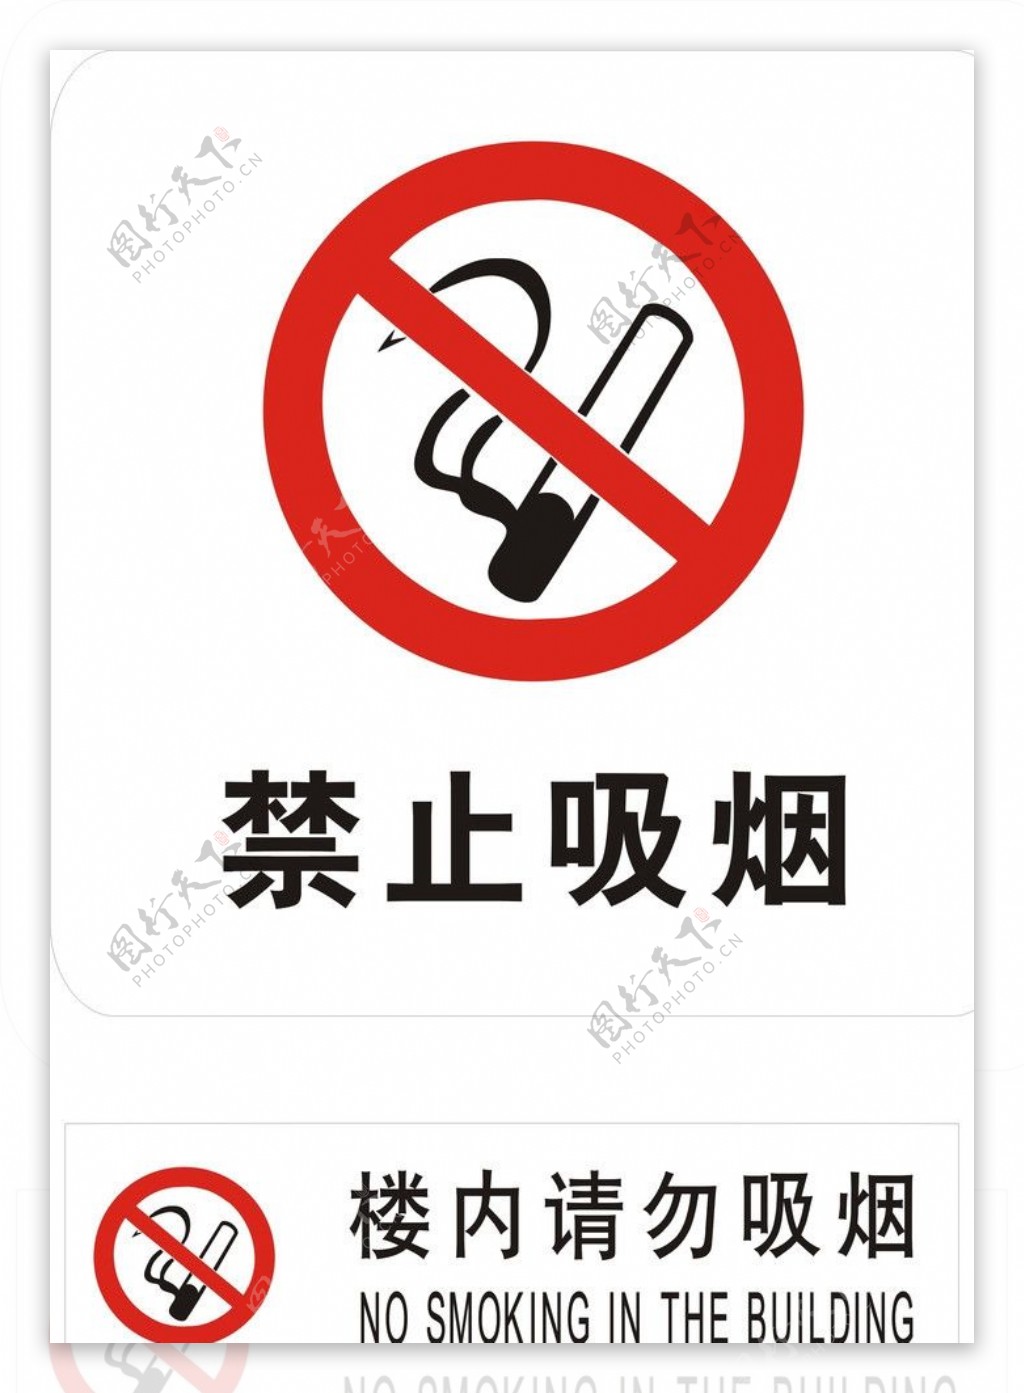 禁止吸烟标记图片